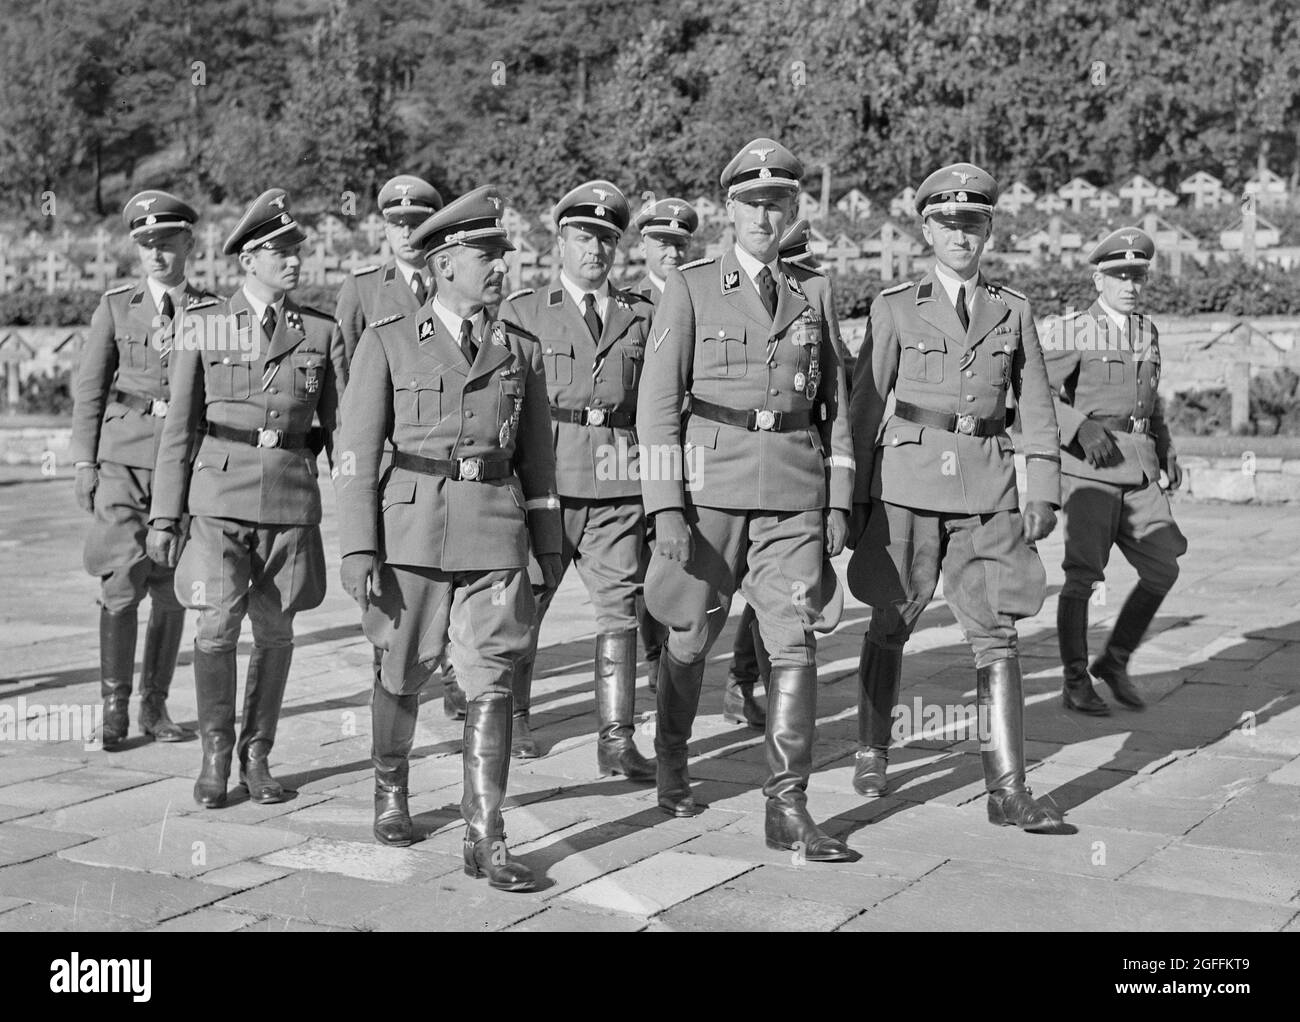 Reinhard Heydrich con un gruppo di soldati SS di alto rango al cimitero di Ekeberg per i soldati tedeschi a Oslo durante la sua visita in Norvegia il 3-6 settembre 1941. Heydrich era un SS-Obergruppenführer e Generale di polizia così come capo del Reich principale Ufficio di sicurezza RSHA (tra cui la Gestapo, Kripo, e SD). Heydrich camminando di fronte con la SS-Brigadeführer Heinrich Müller (capo della Gestapo) alla sua destra e la SS-Oberführer Heinrich Fehlis (capo di SD e Sipo in Norvegia) alla sua sinistra. Foto Stock